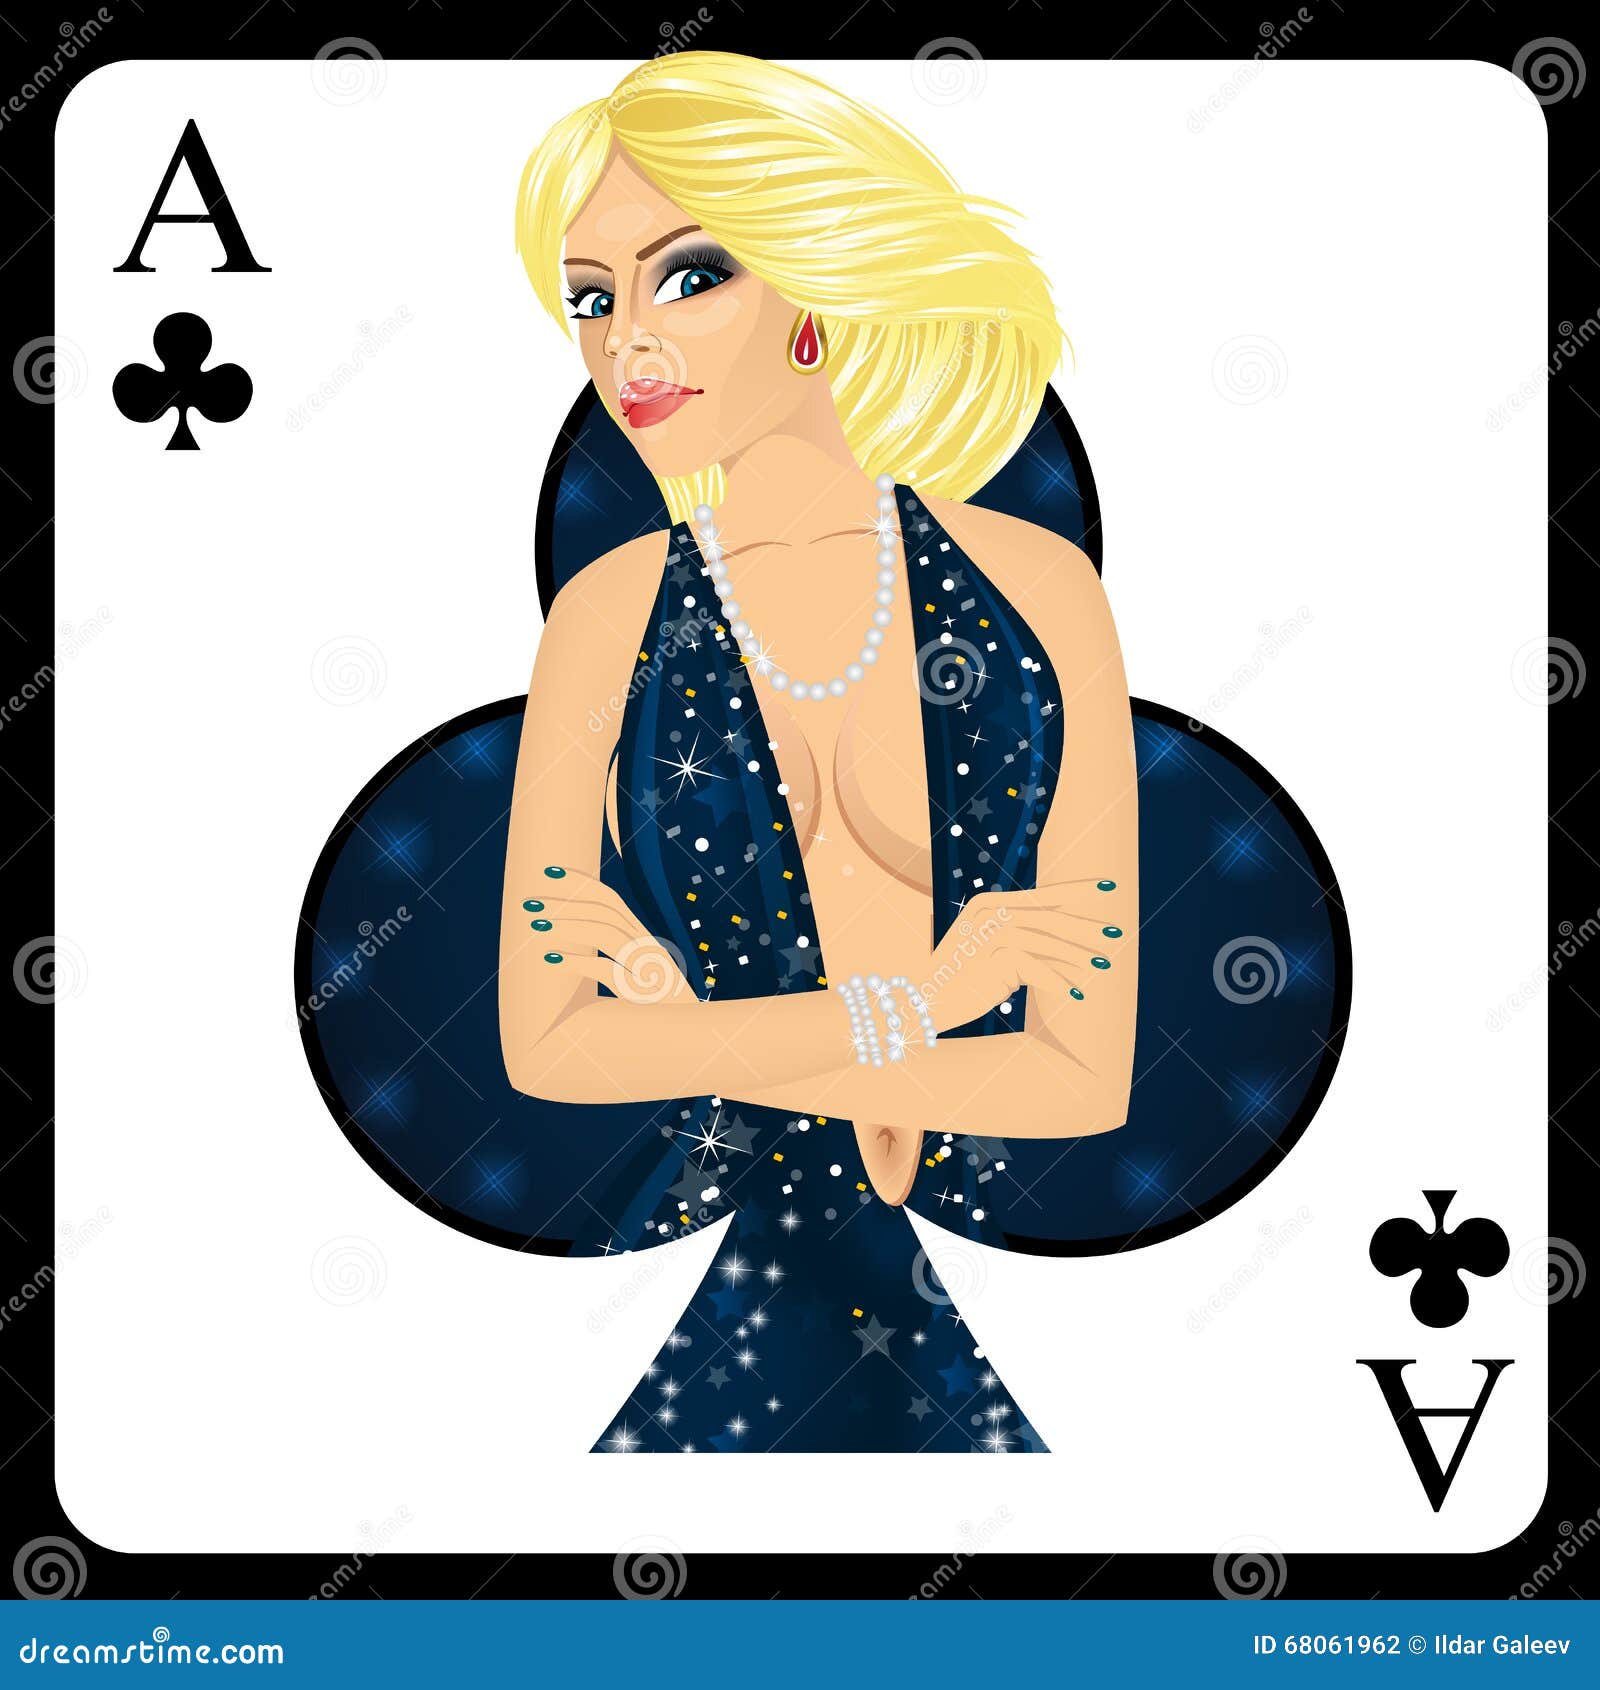 donna e asso a poker